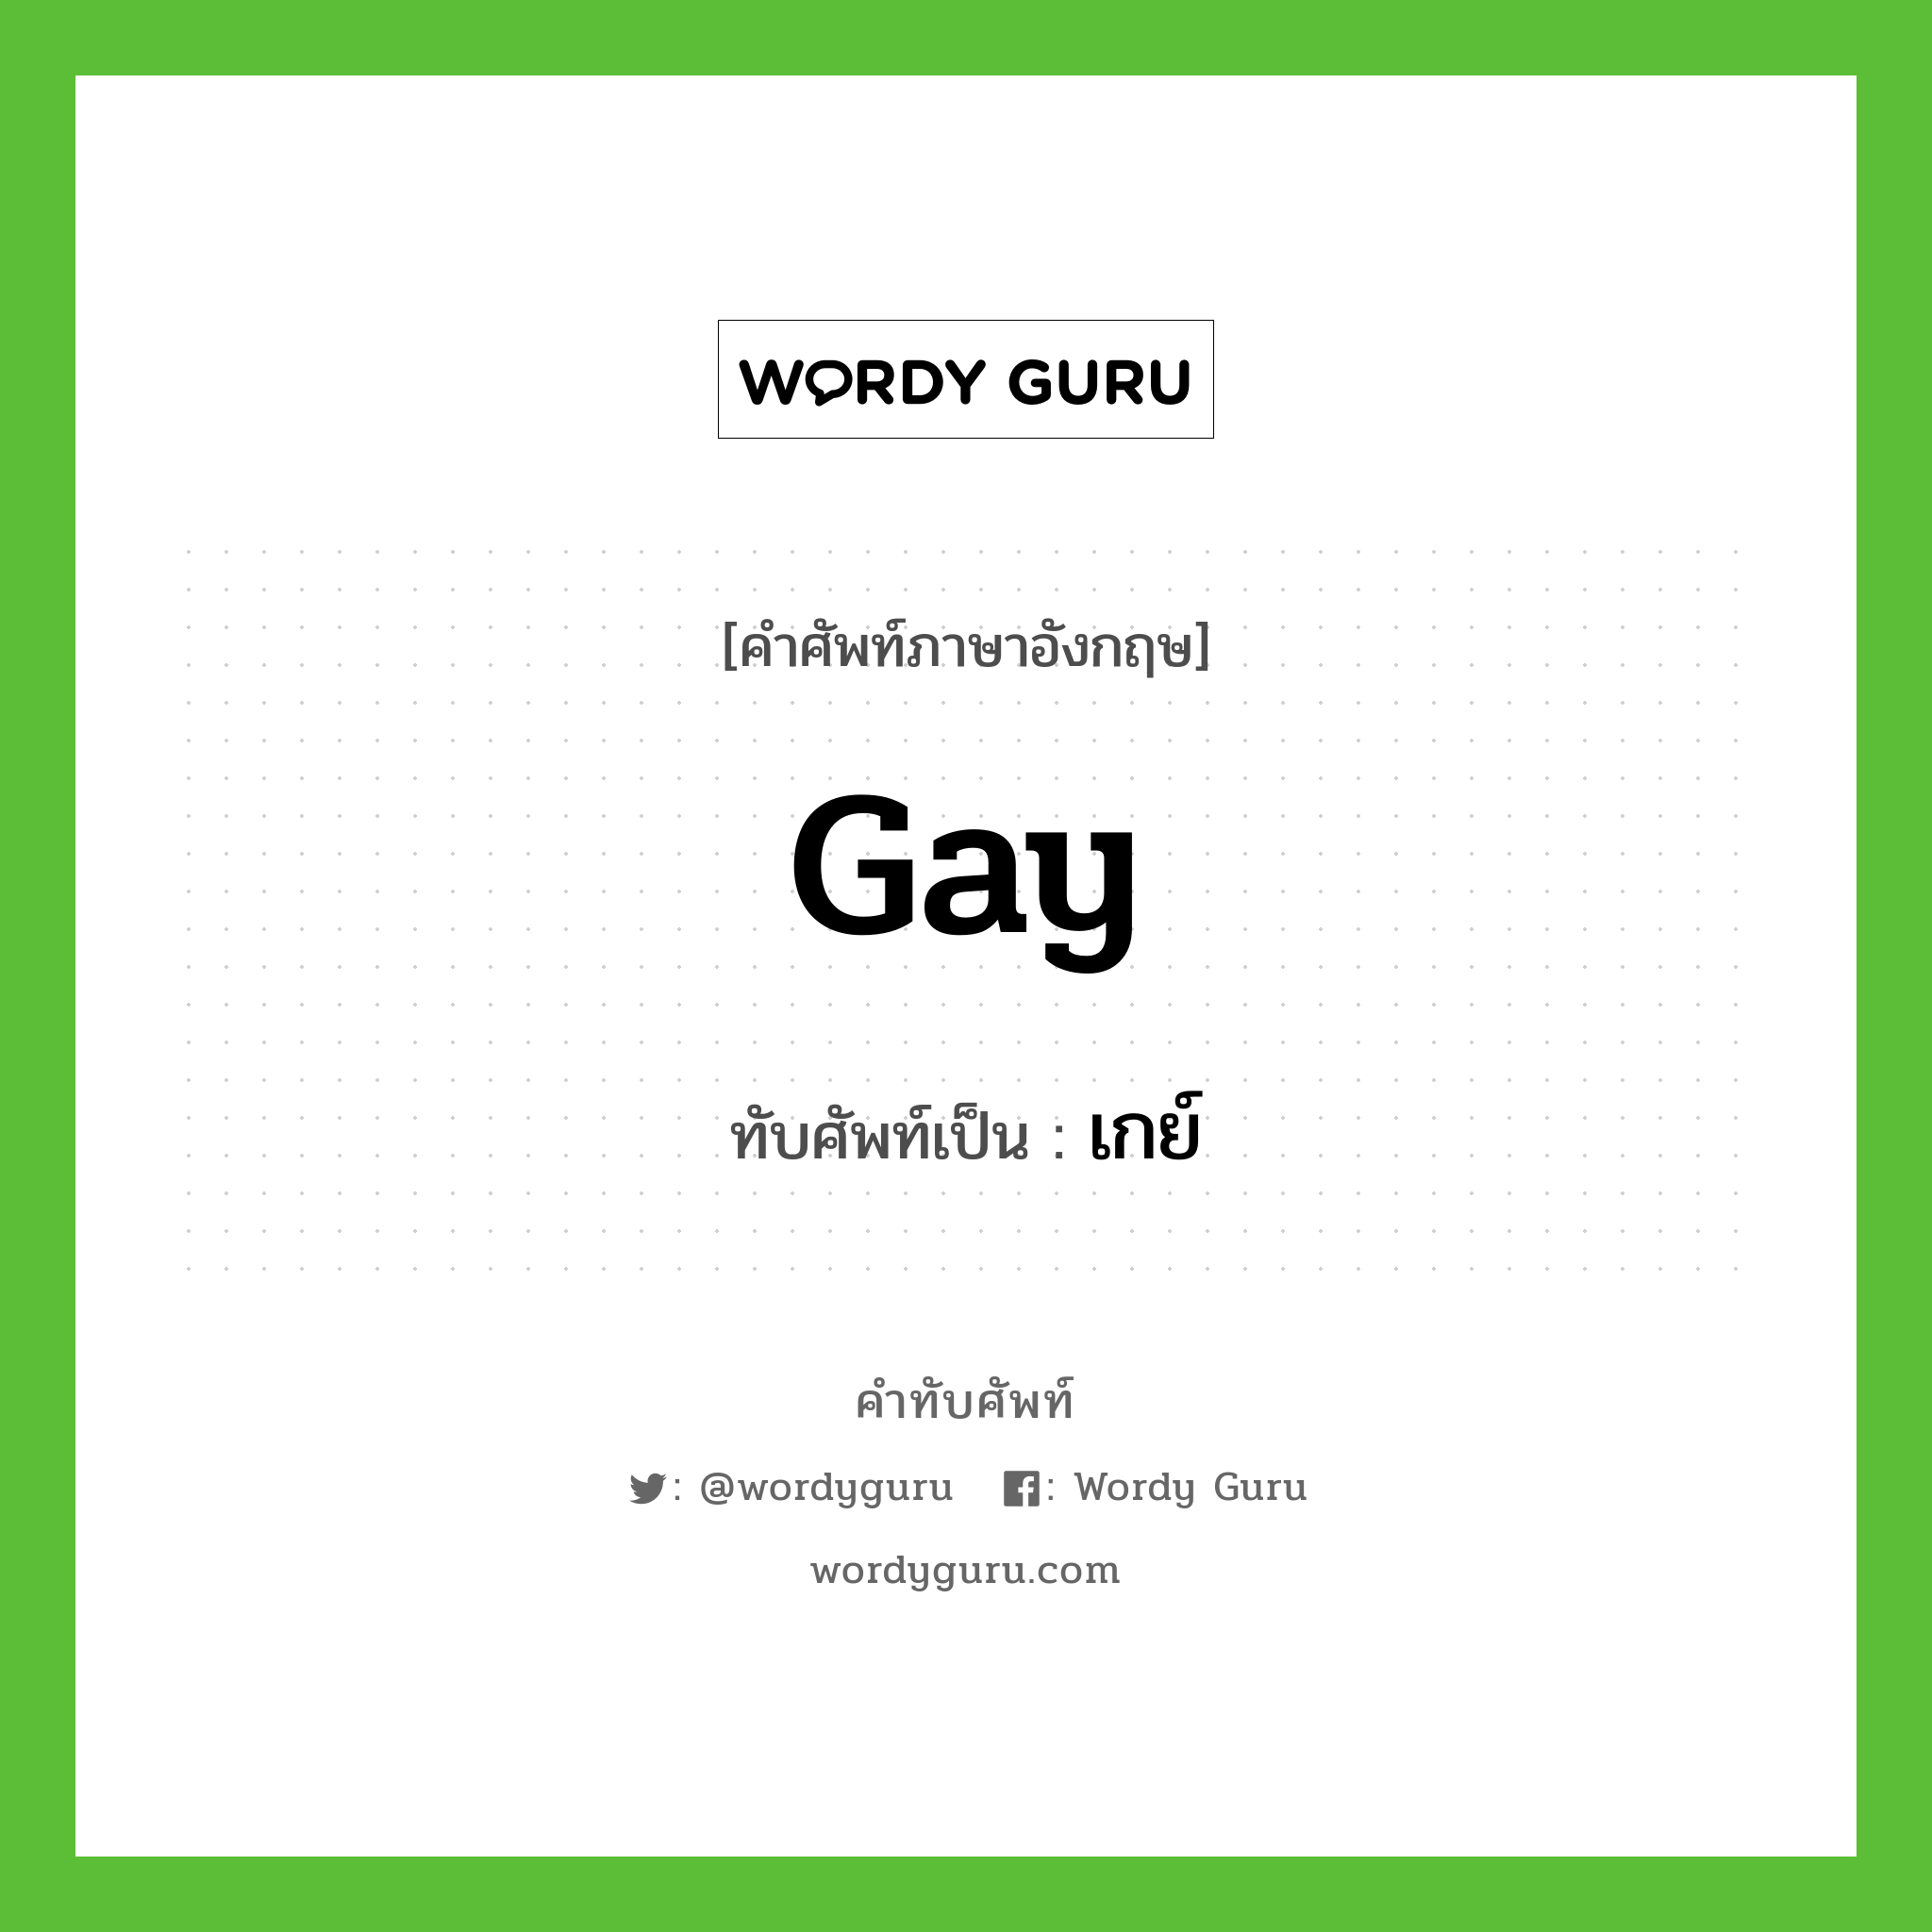 gay เขียนเป็นคำไทยว่าอะไร?, คำศัพท์ภาษาอังกฤษ gay ทับศัพท์เป็น เกย์